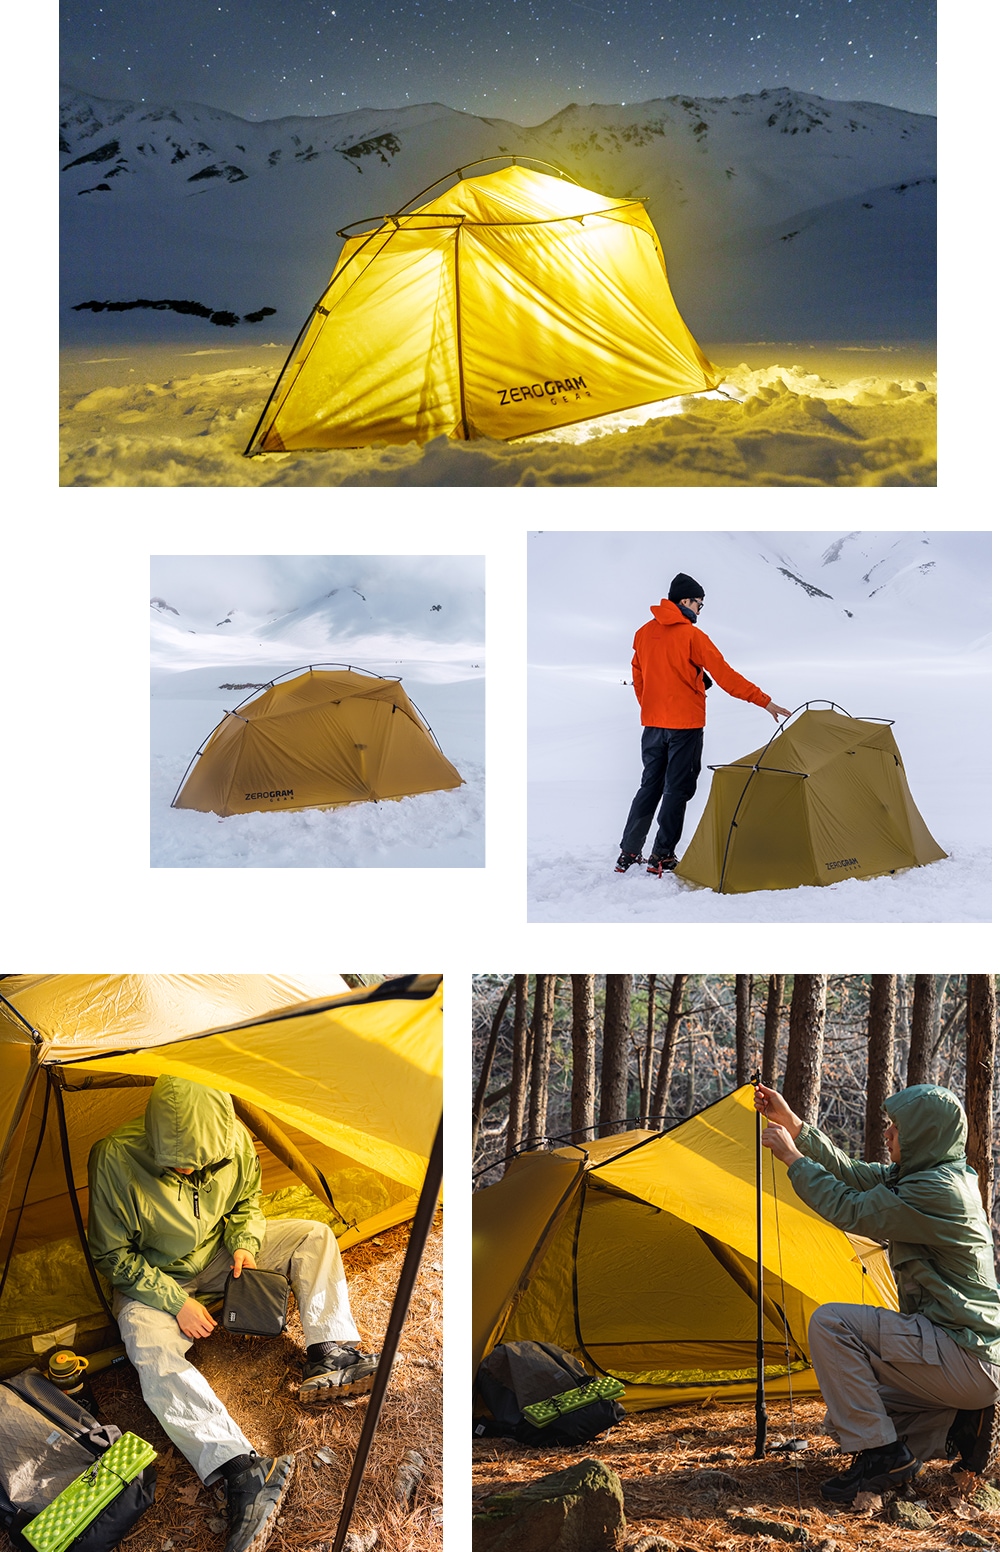 Thru Hiker 1p ZEROBONE | Tent | ZEROGRAM （ゼログラム）